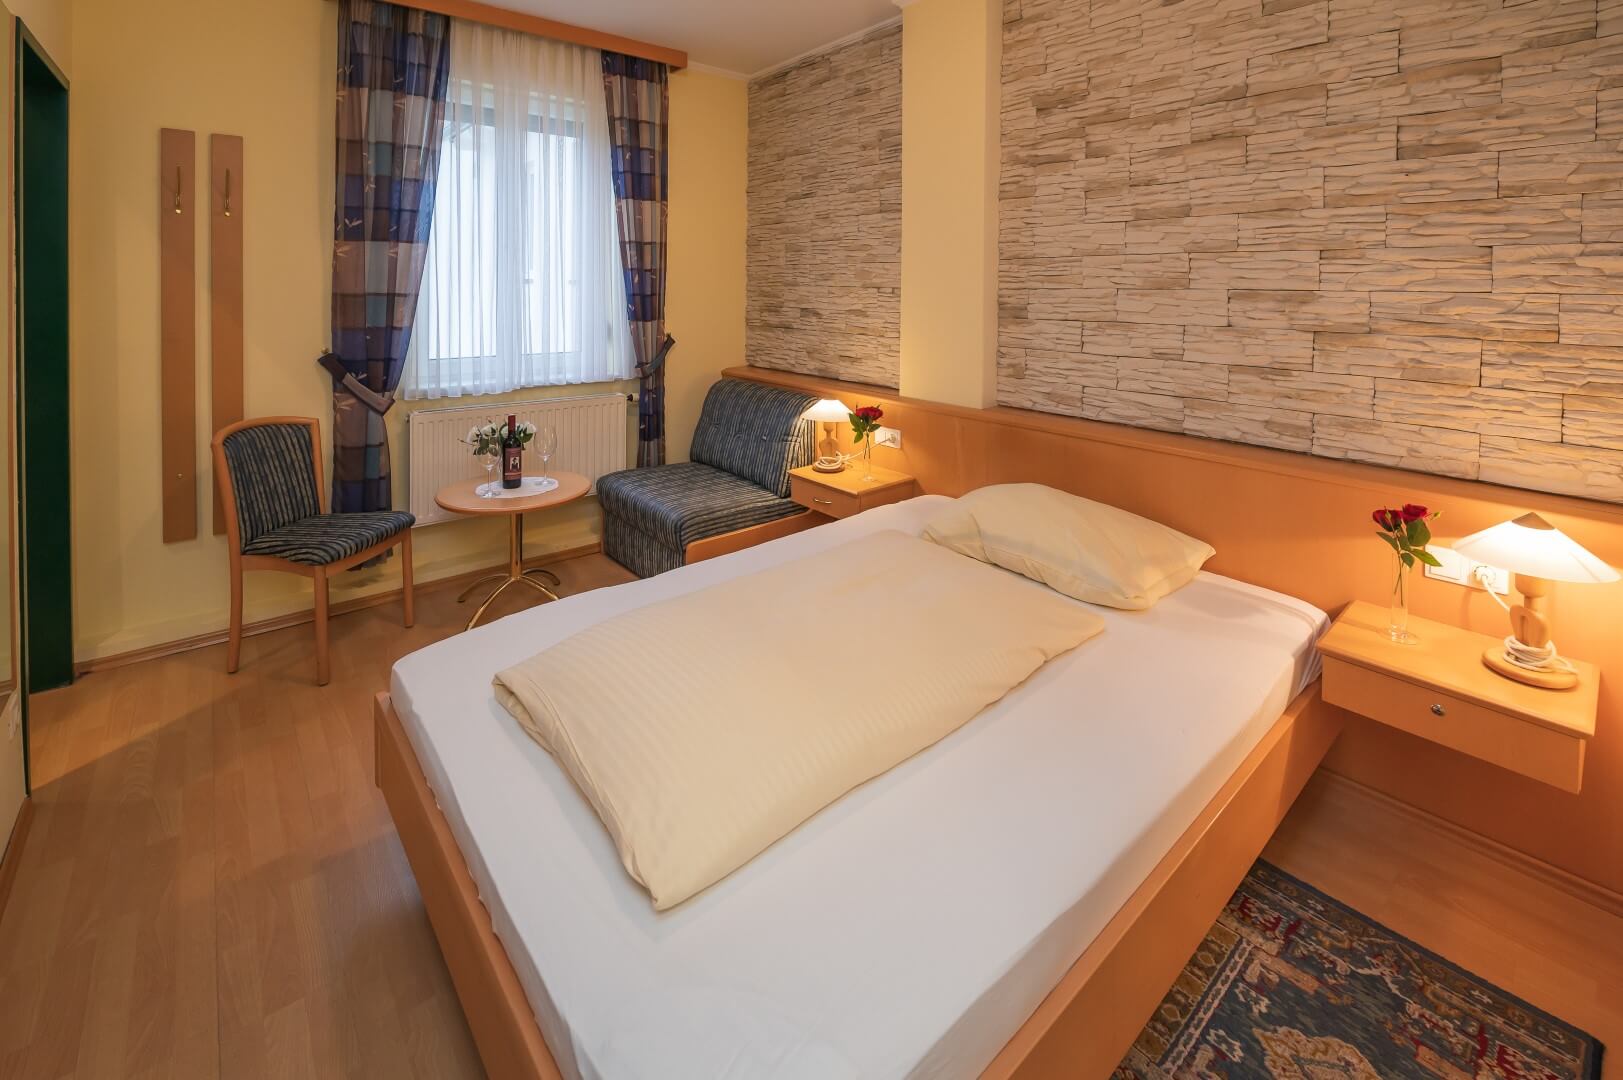 Einladendes Zimmer mit Doppelbett, gemütlicher Sitzecke und Steinwand im Gasthaus Treiber.